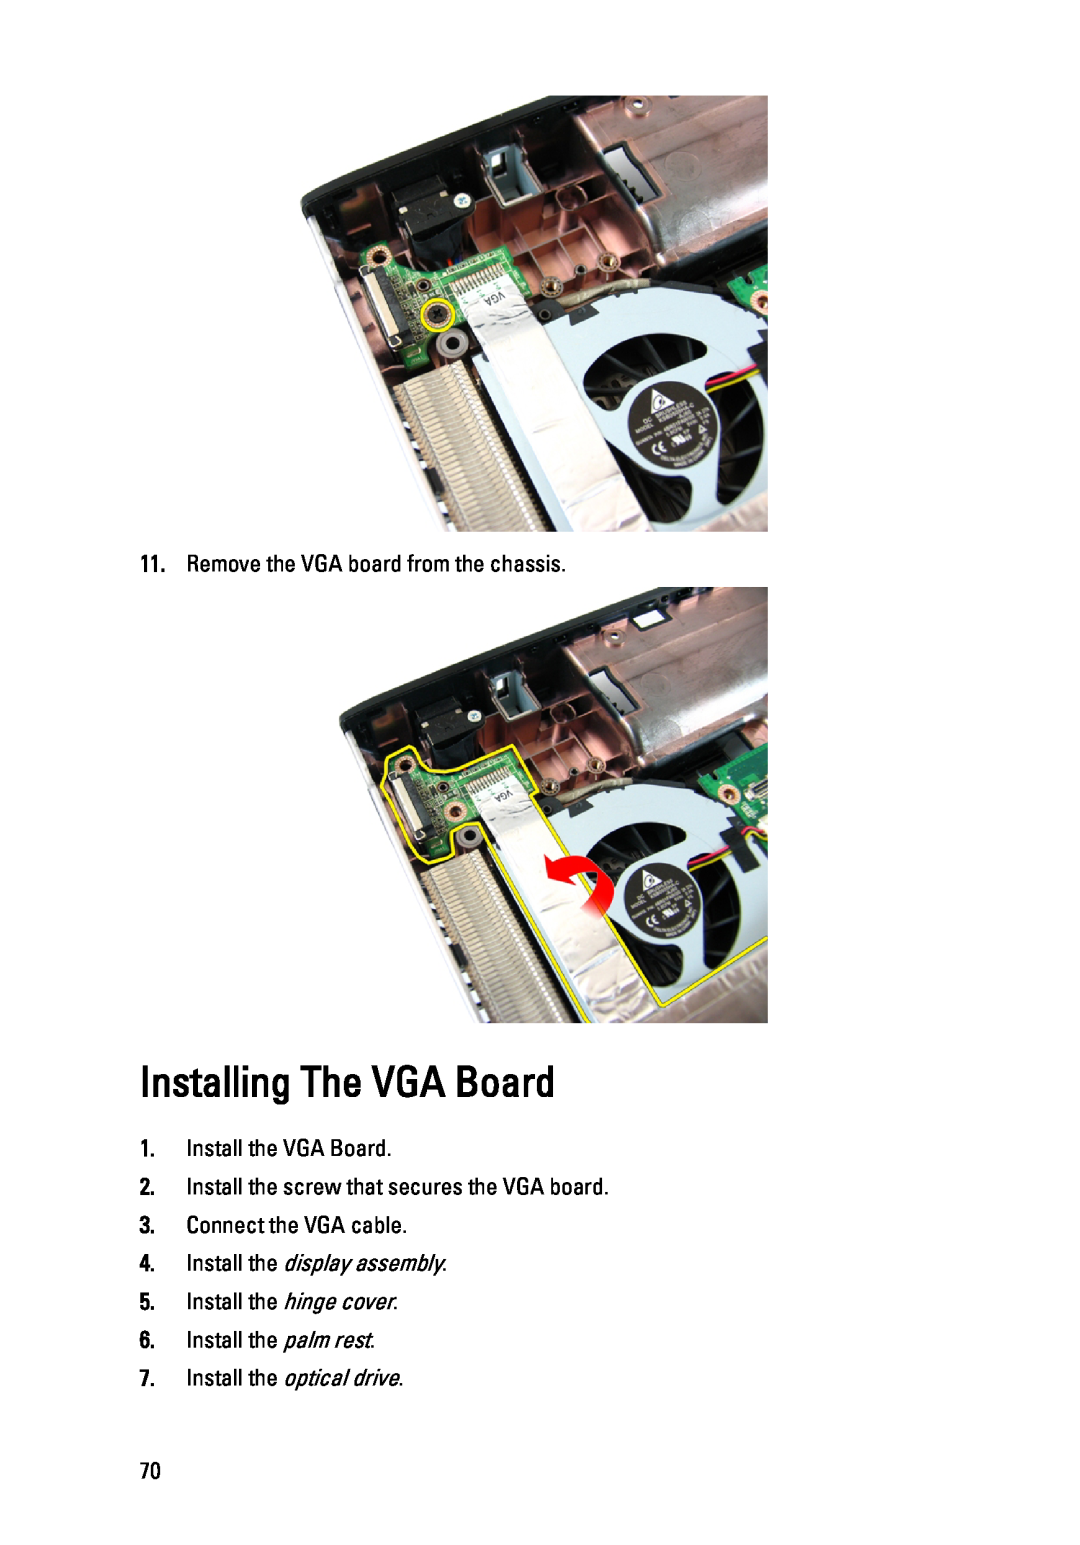 Dell 3450 Installing The VGA Board, Remove the VGA board from the chassis, Install the VGA Board, Connect the VGA cable 